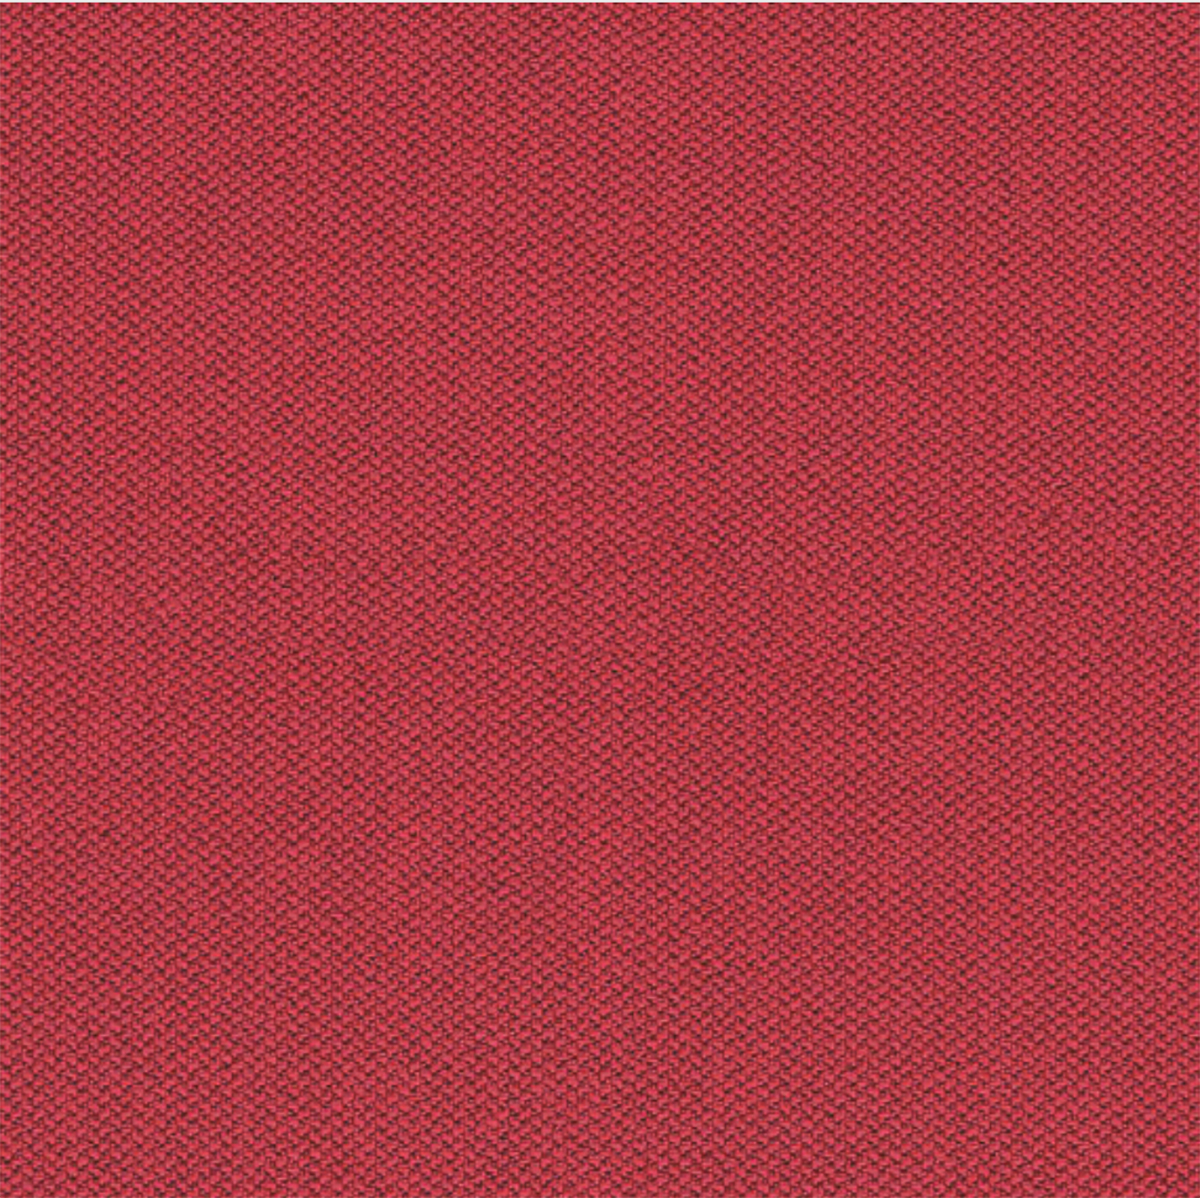 Camira Era Red Fabric [+$48.00]